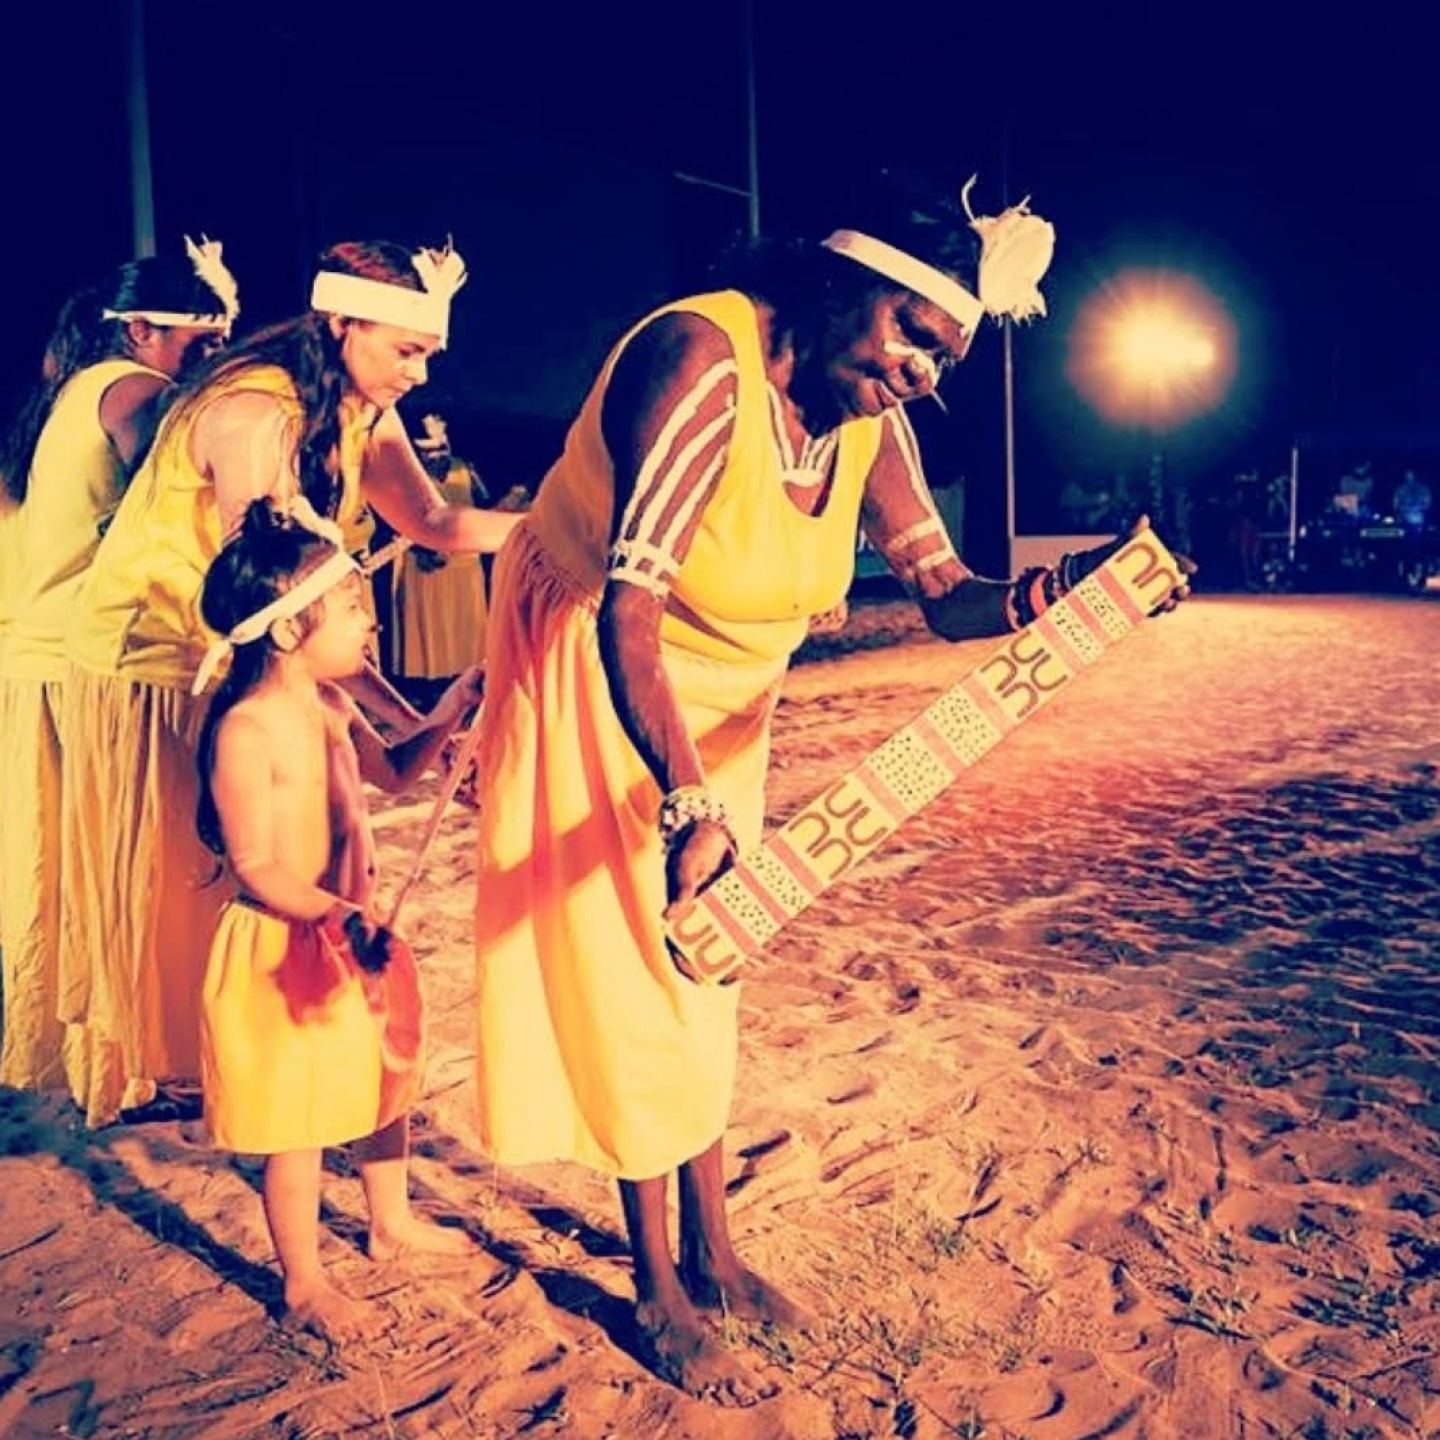 Gudanji Women partaking in a ritual of their people